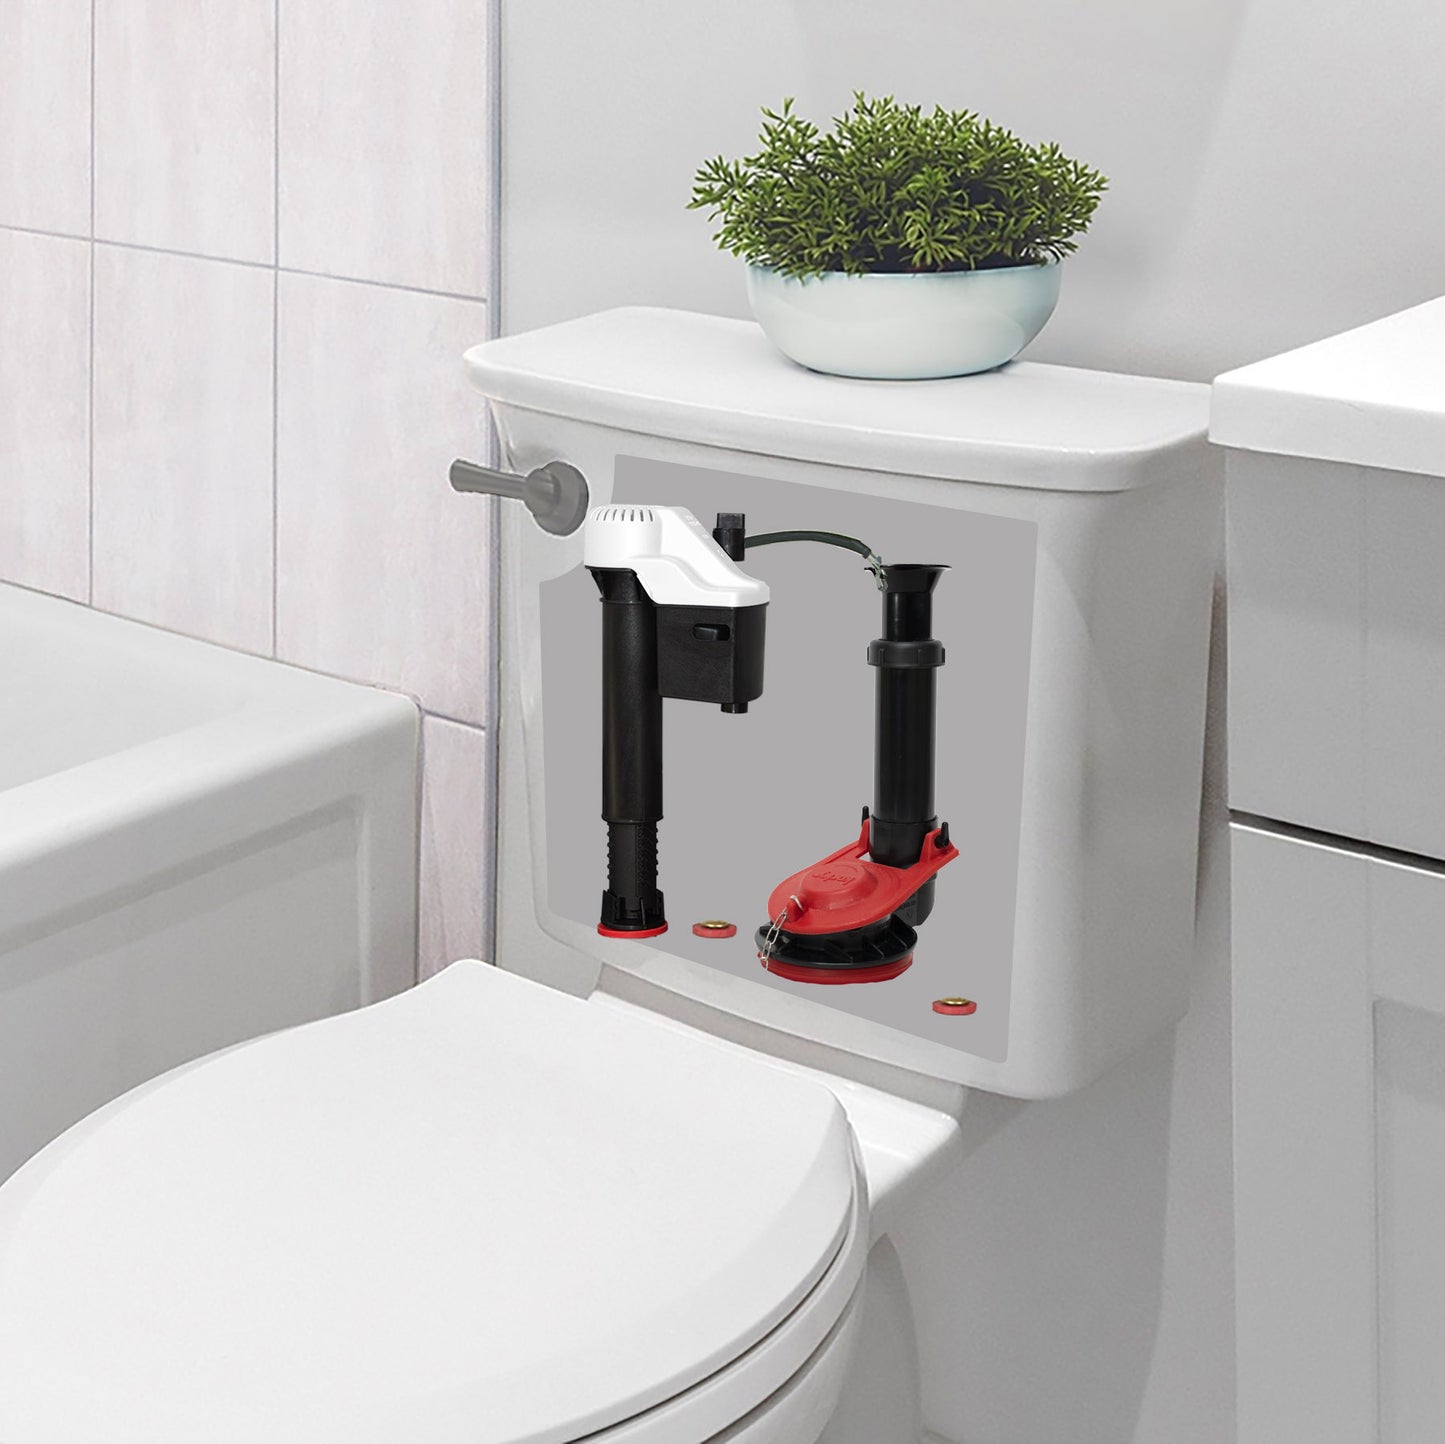 4010 - QuietFILL Complete Toilet Repair Kit